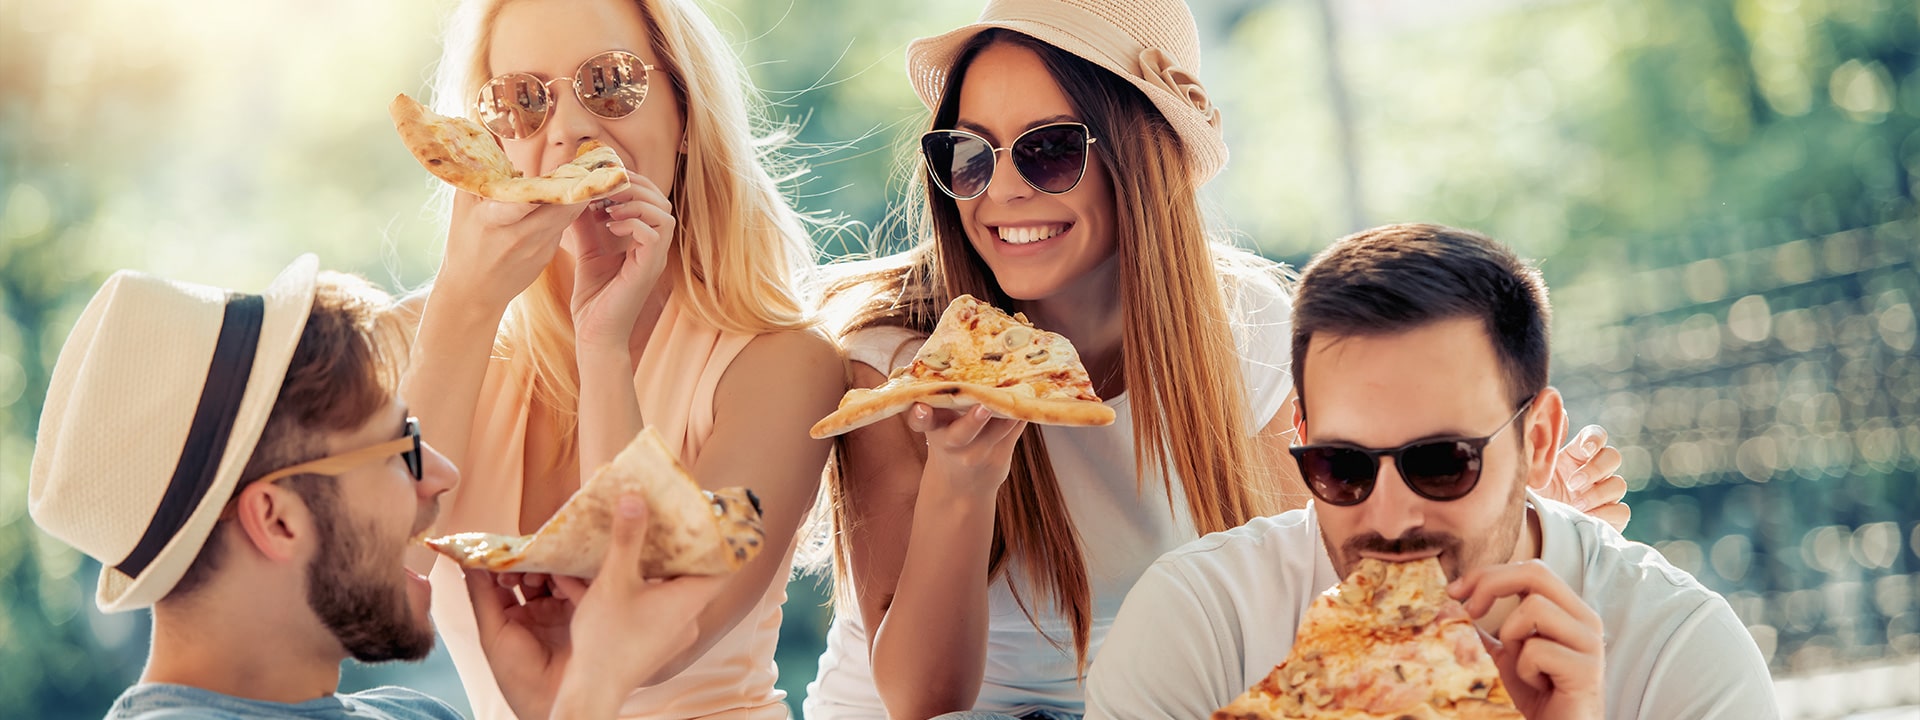 Giovani che ridono e mangiano la pizza